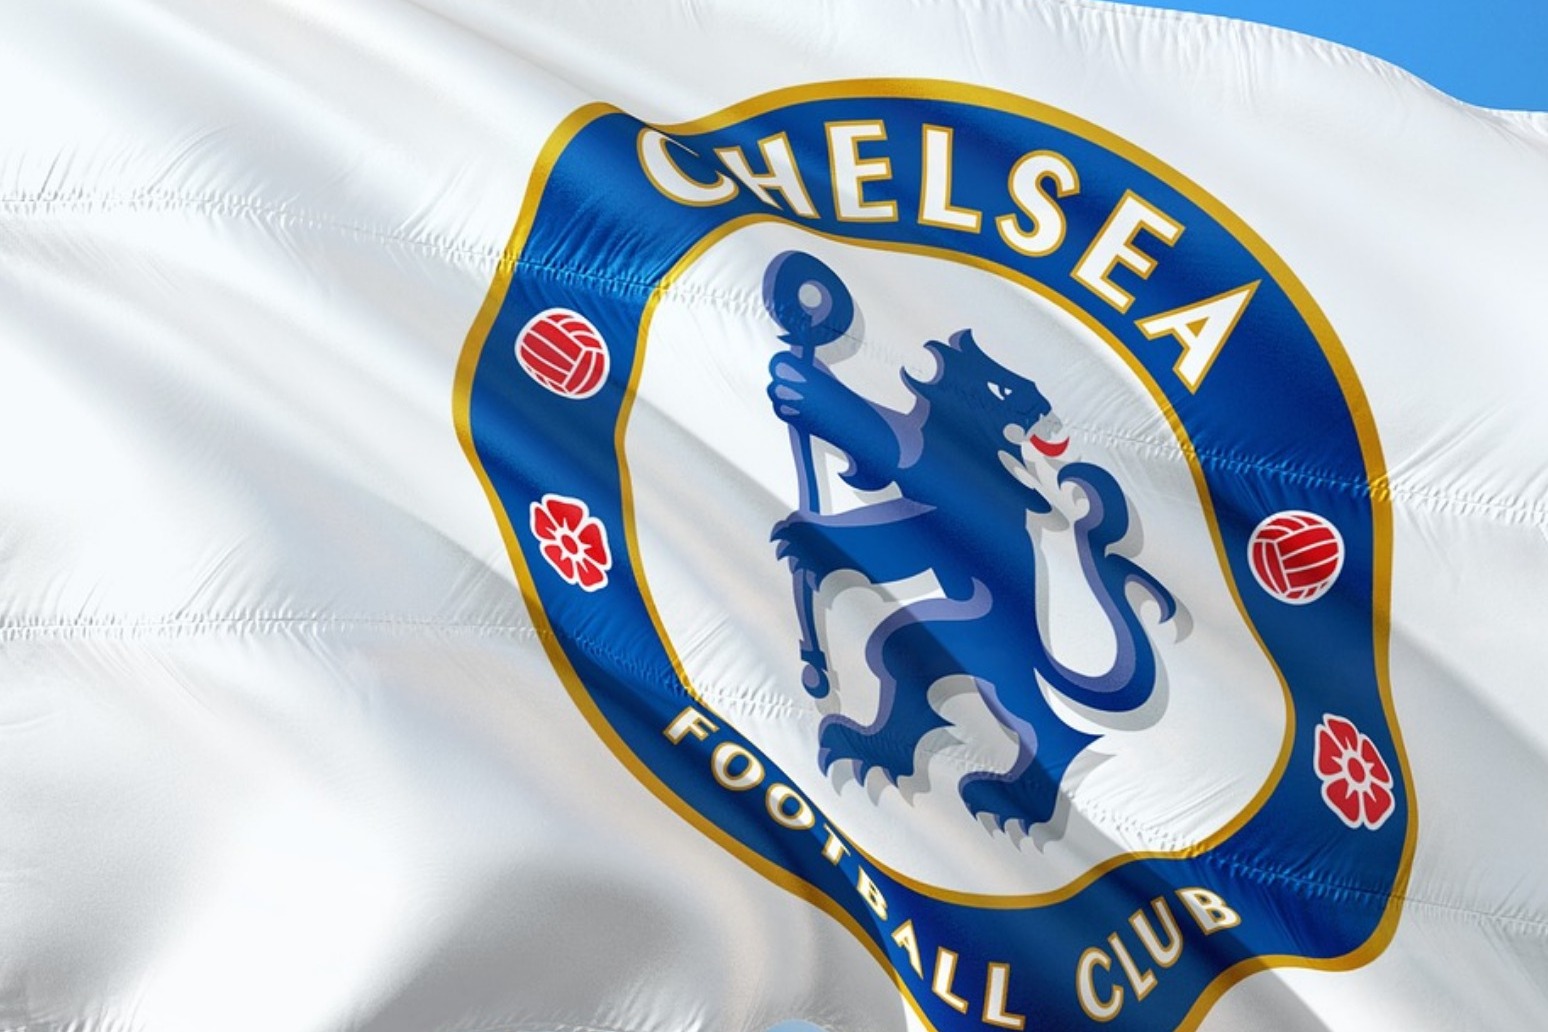 Chelsea sign Spanish goalkeeper Kepa for world record fee 